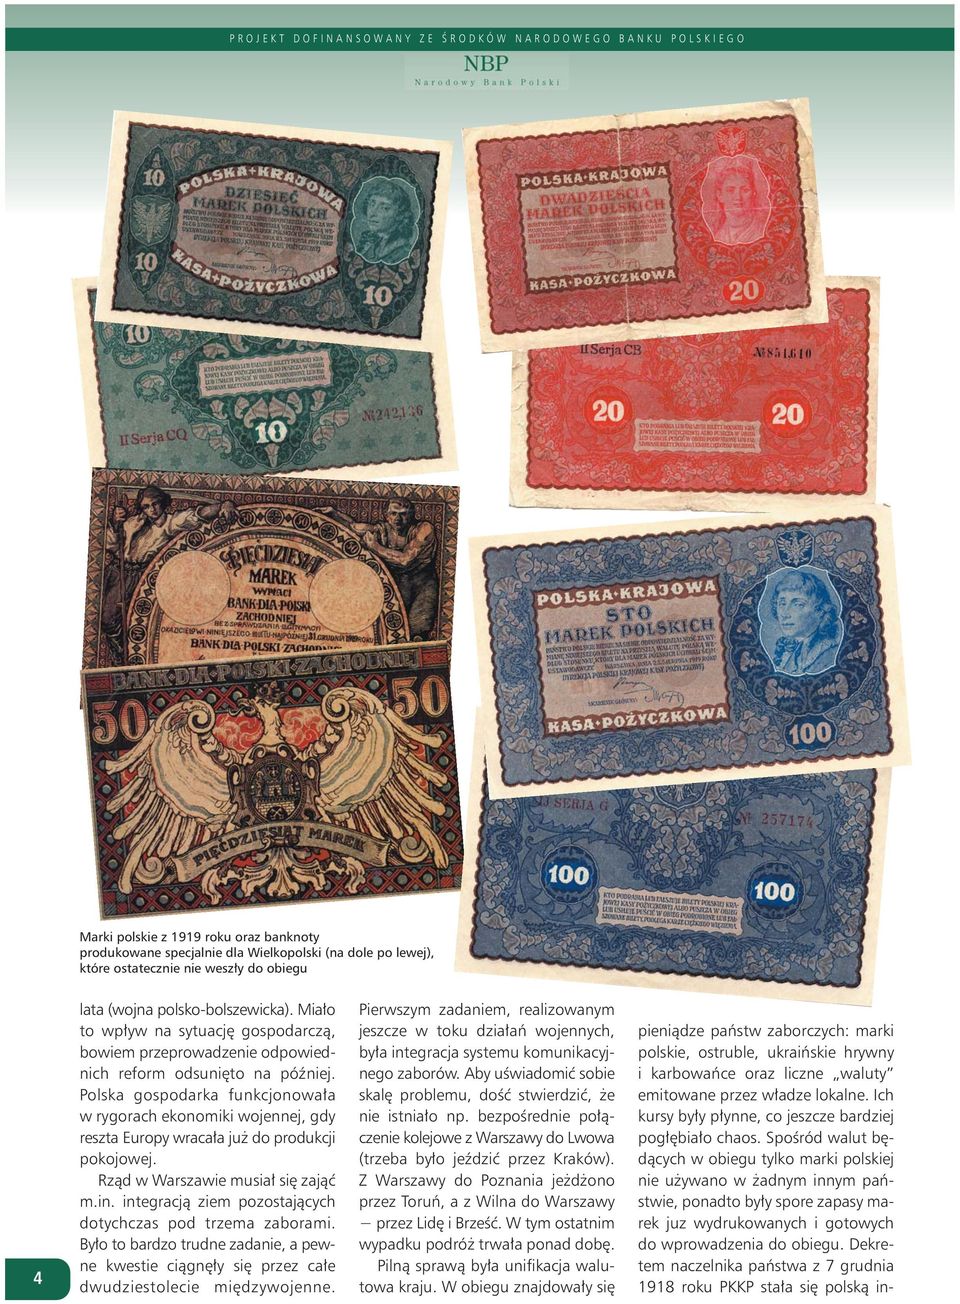 Spośród walut będących w obiegu tylko marki polskiej nie używano w żadnym innym państwie, ponadto były spore zapasy marek juz wydrukowanych i gotowych do wprowadzenia do obiegu.